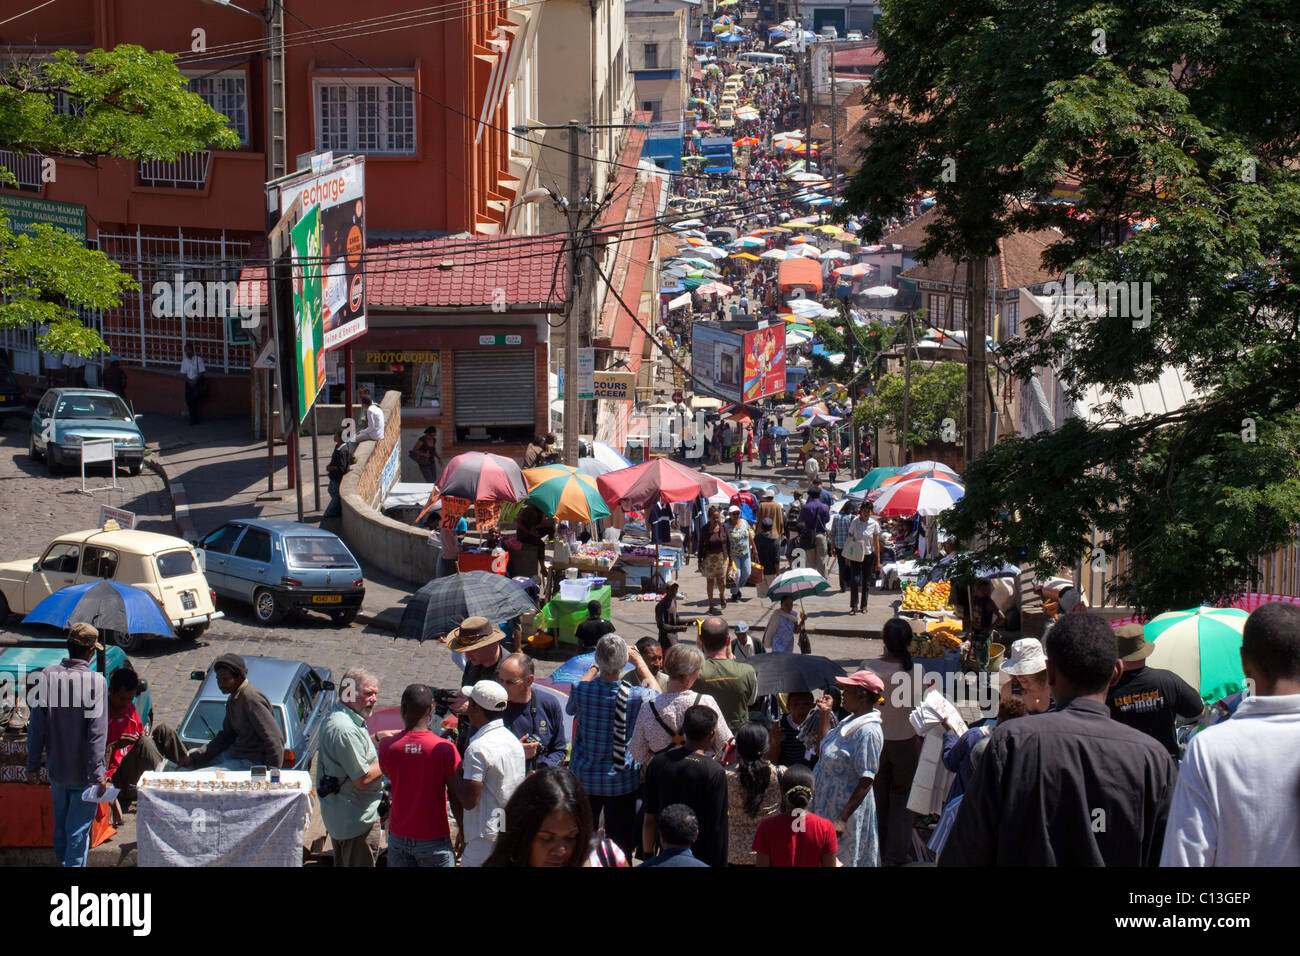 Antananarivo, or Tana. Capital city of Madagascar. View of a busy Zoma (market) and shopping street. Stock Photo